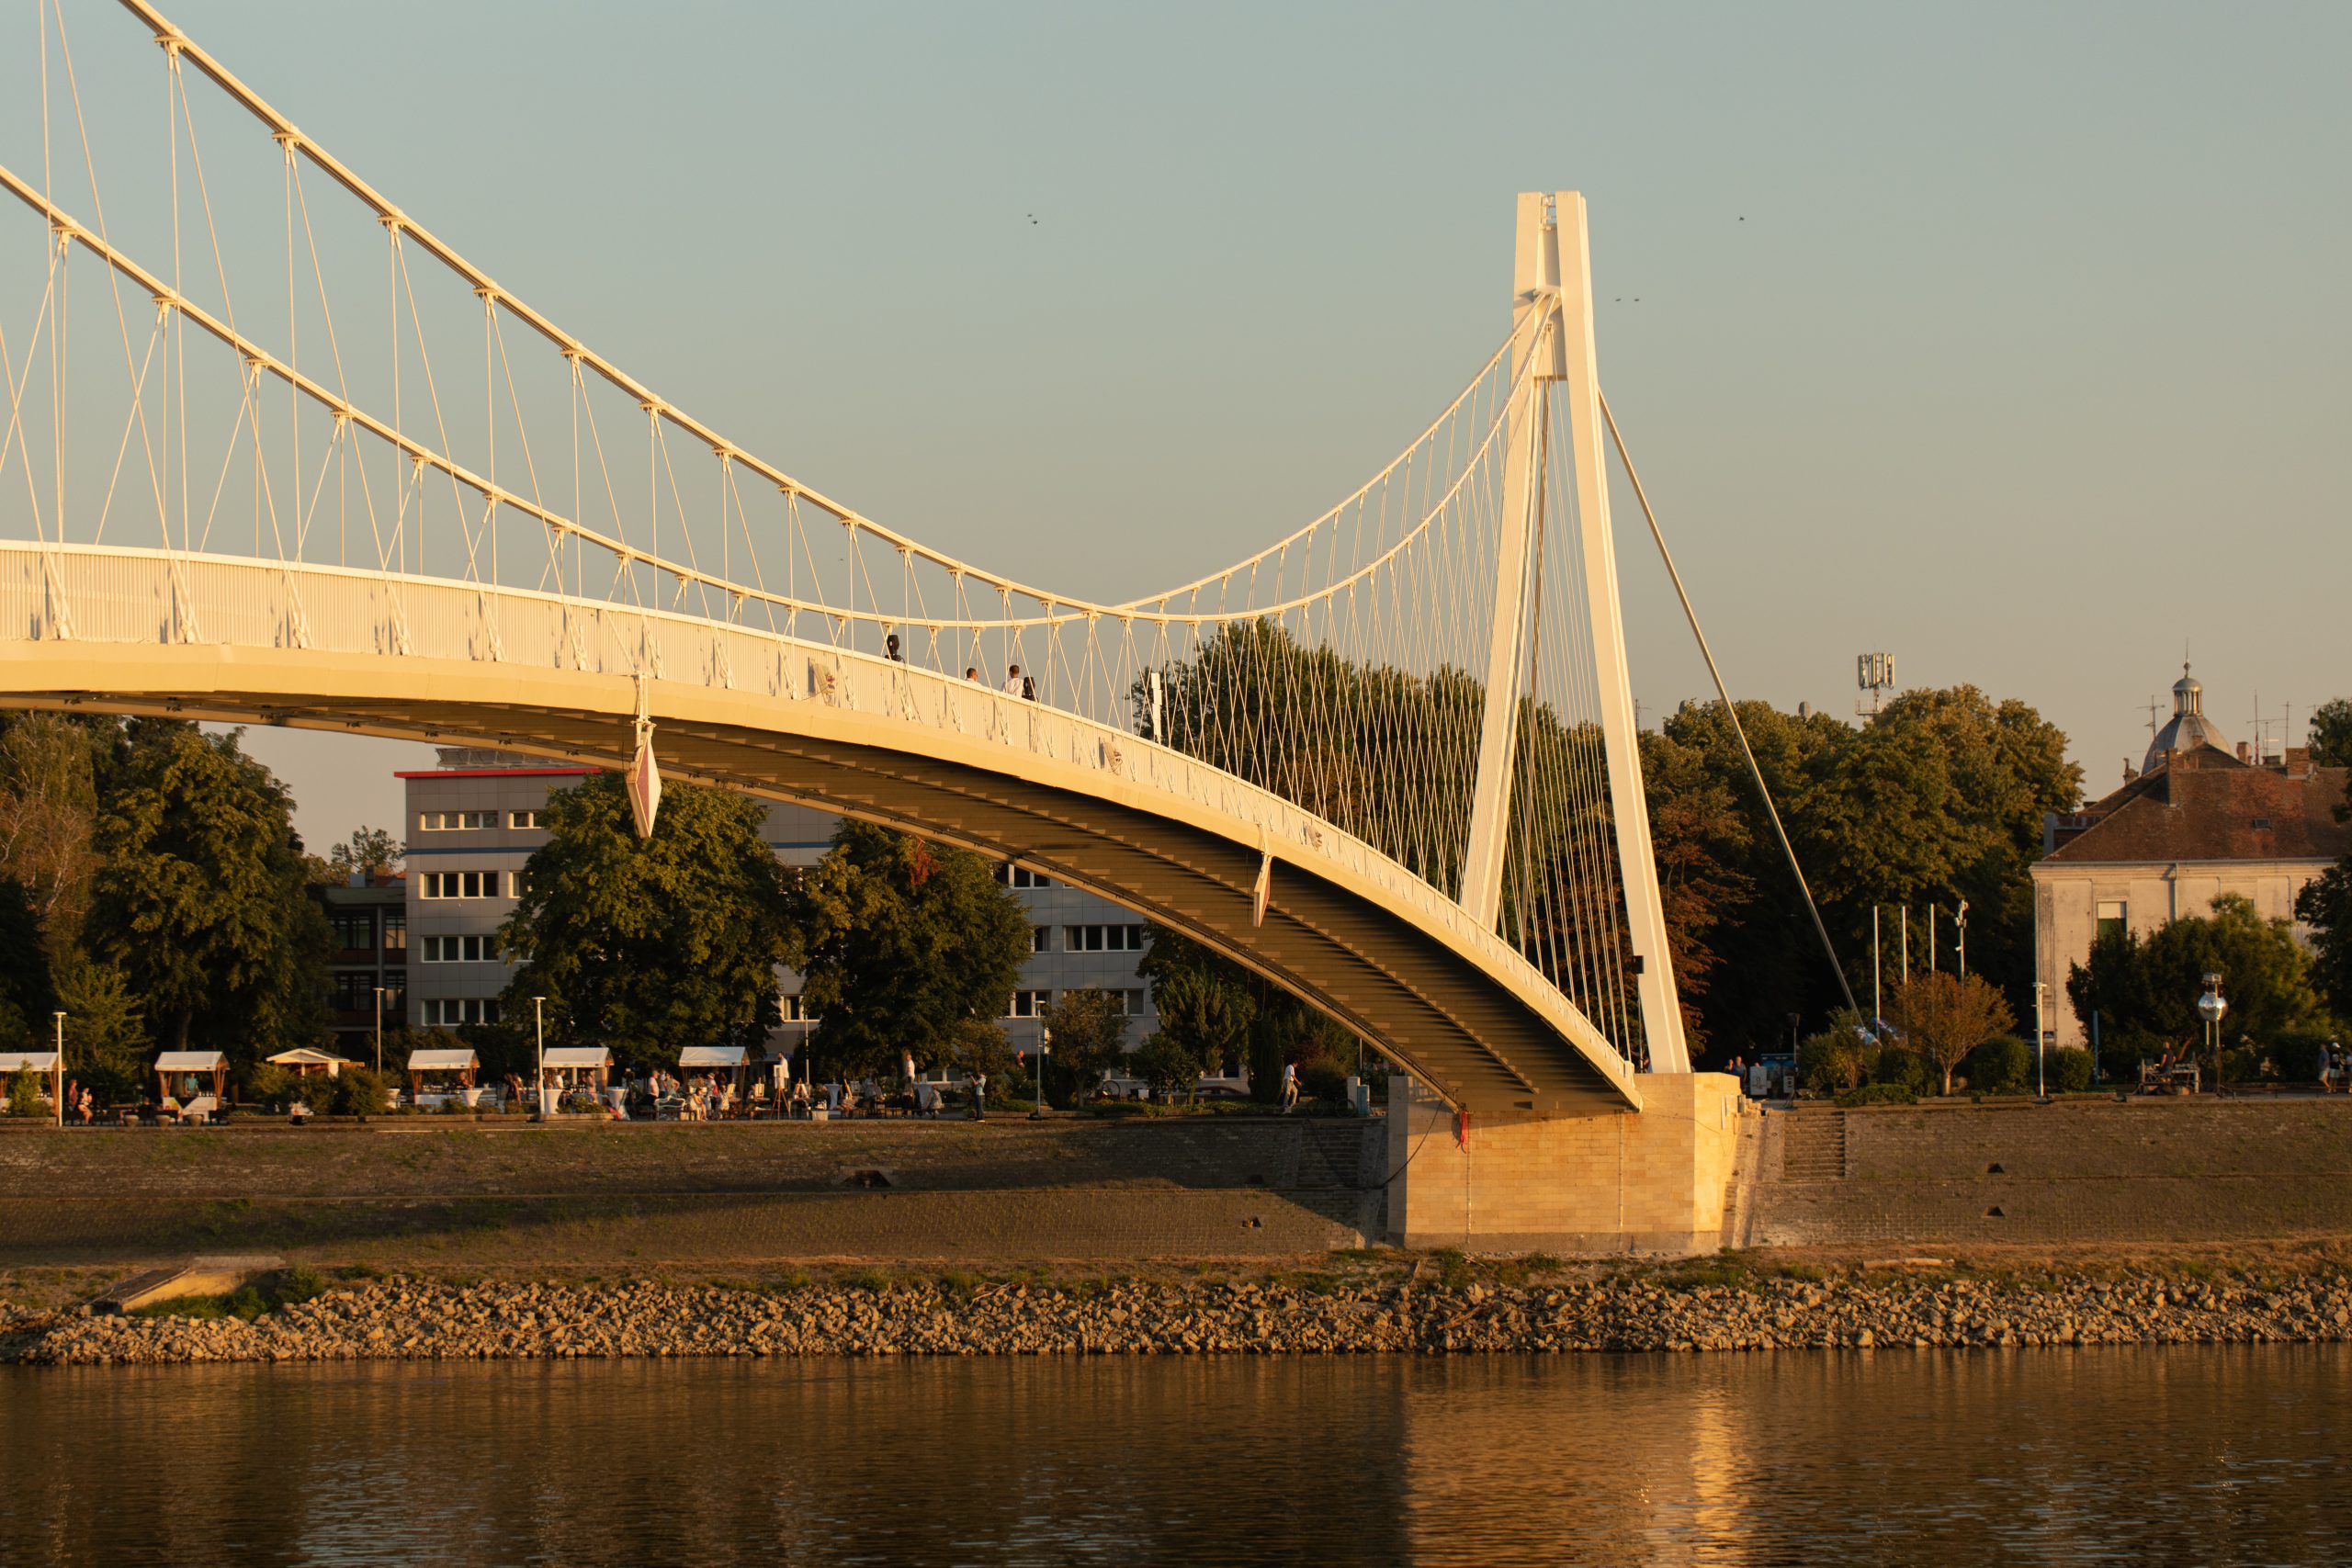 Symbol of Osijek - pedestrian bridge - opens again